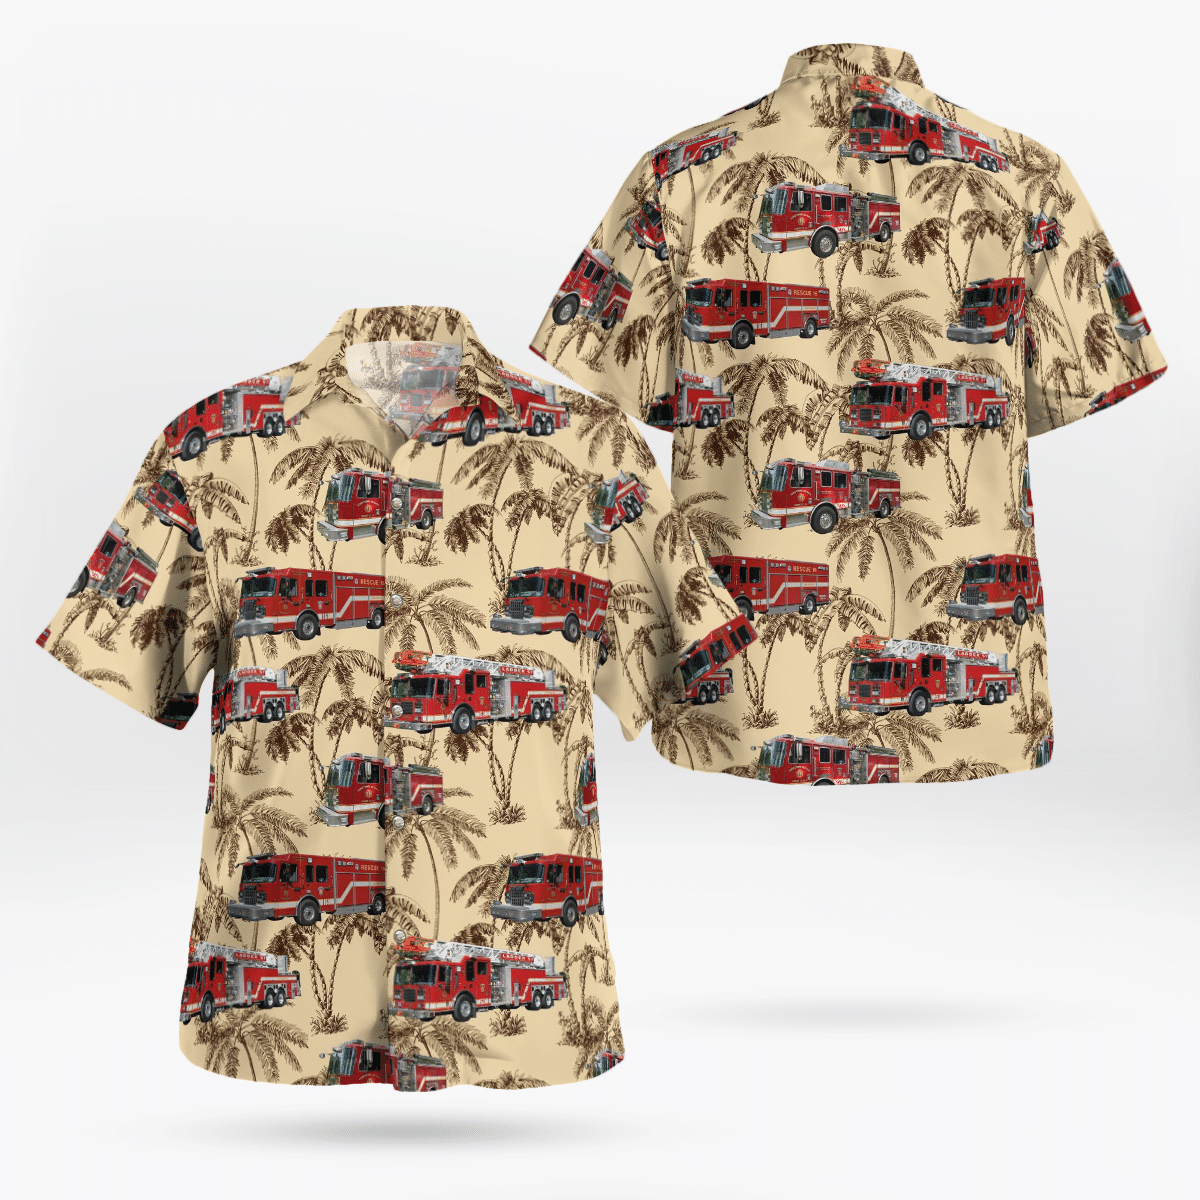 You won't regret buying these Aloha Shirt 86